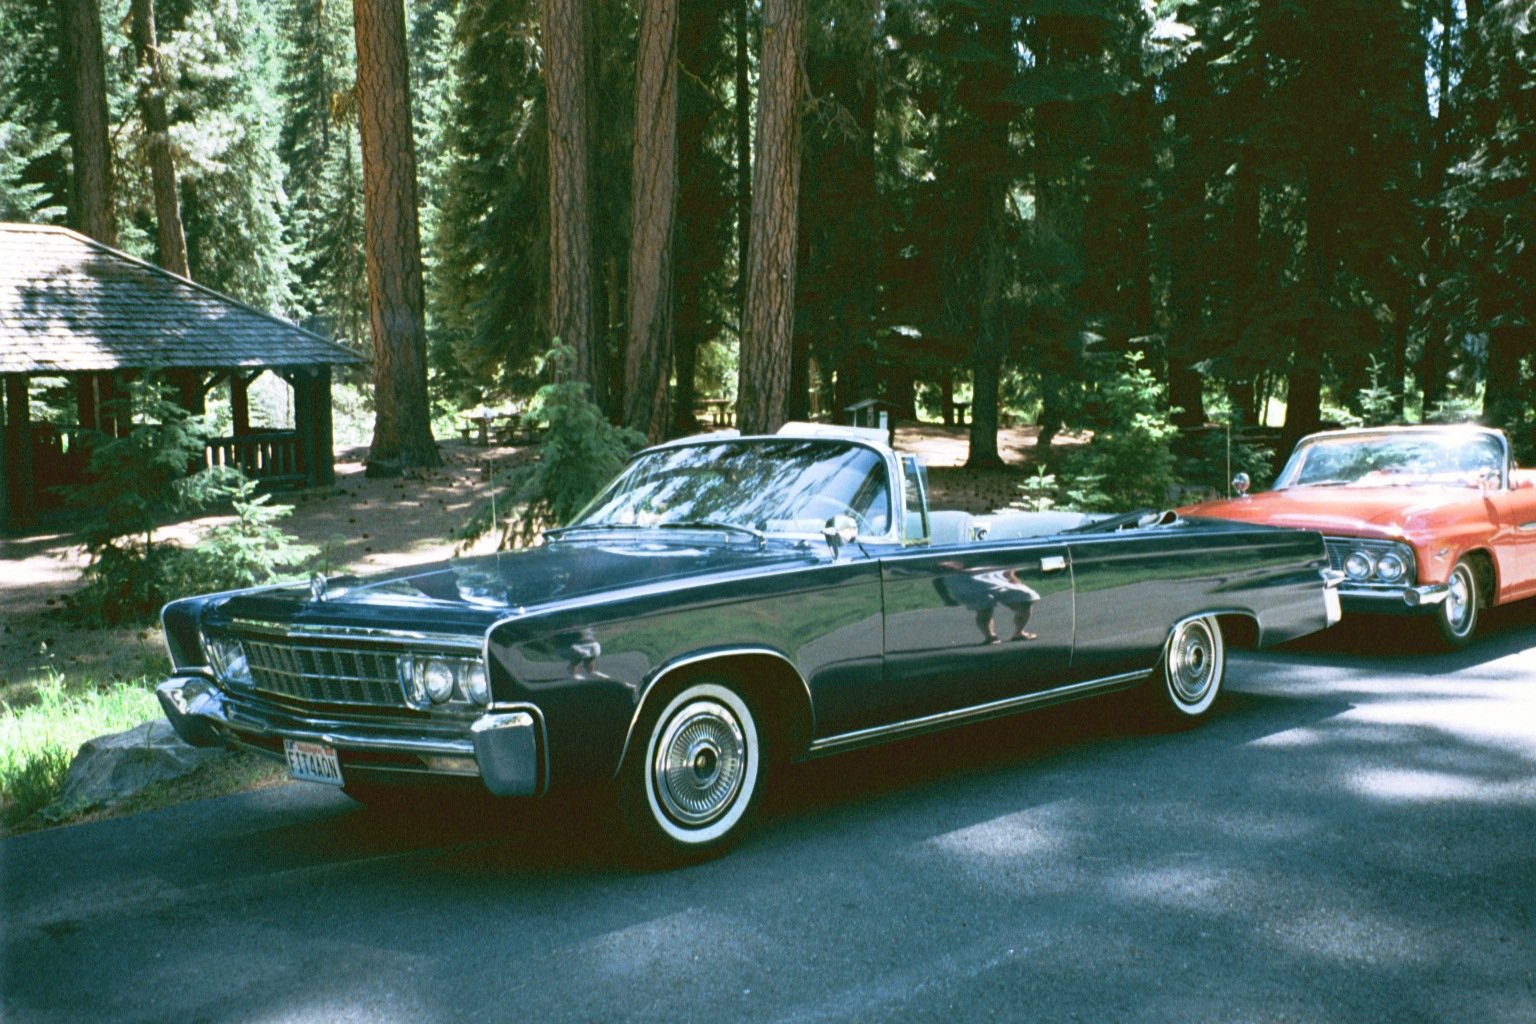 Dan Melnik's 1966 (Chrysler) Imperial LeBaron and Crown Convertible